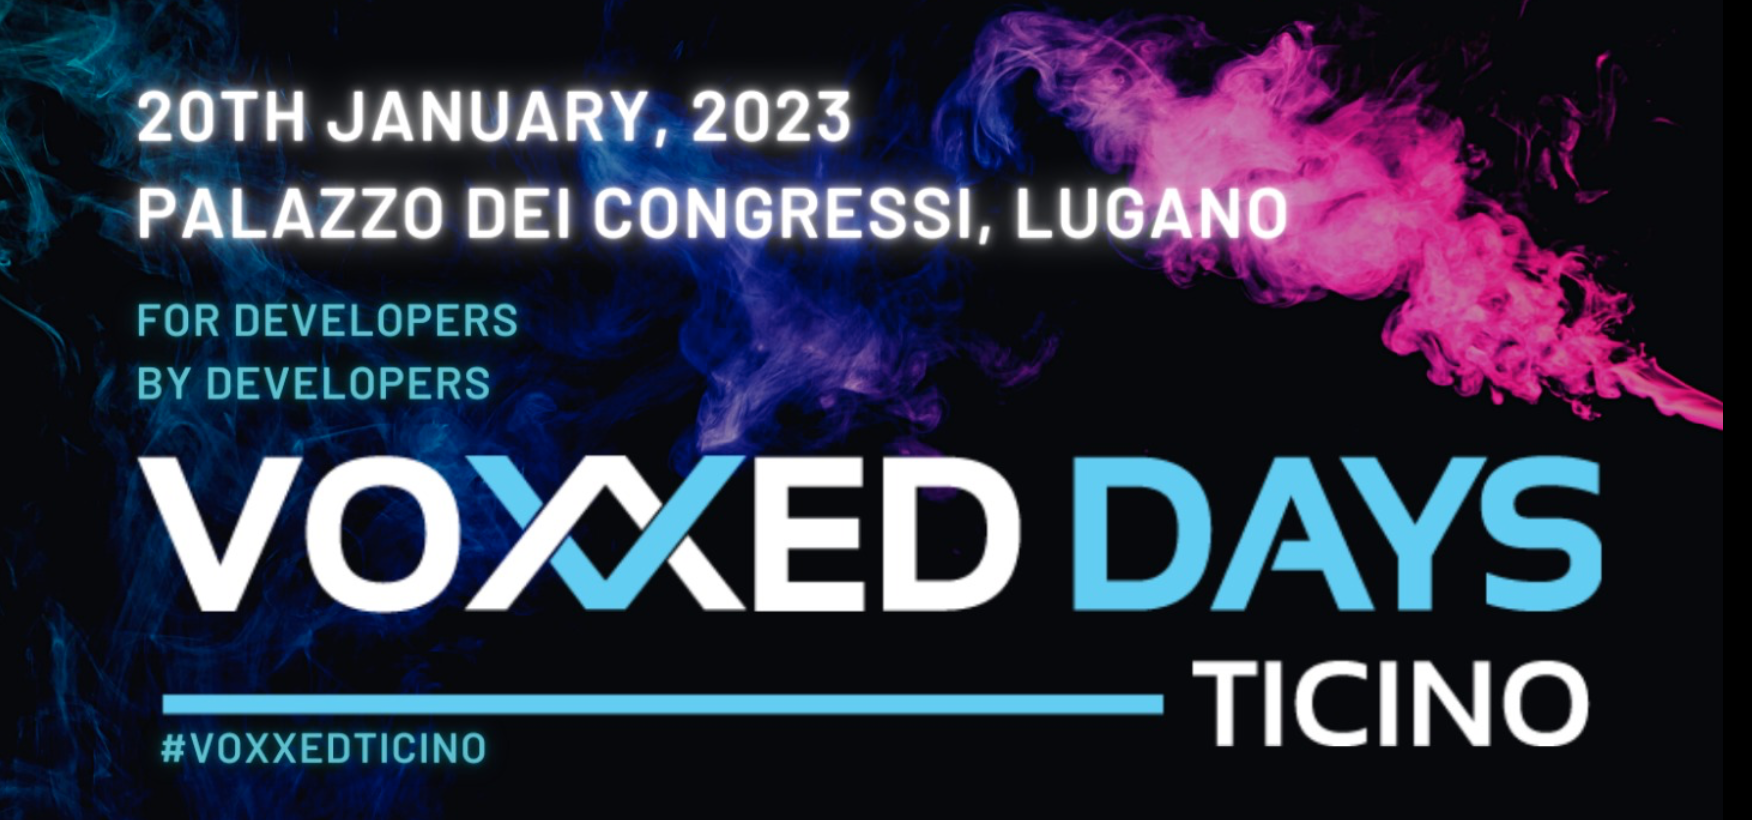 Voxxed Days: la locandina e il logotipo dei "Voxxed Days Ticino" 2023